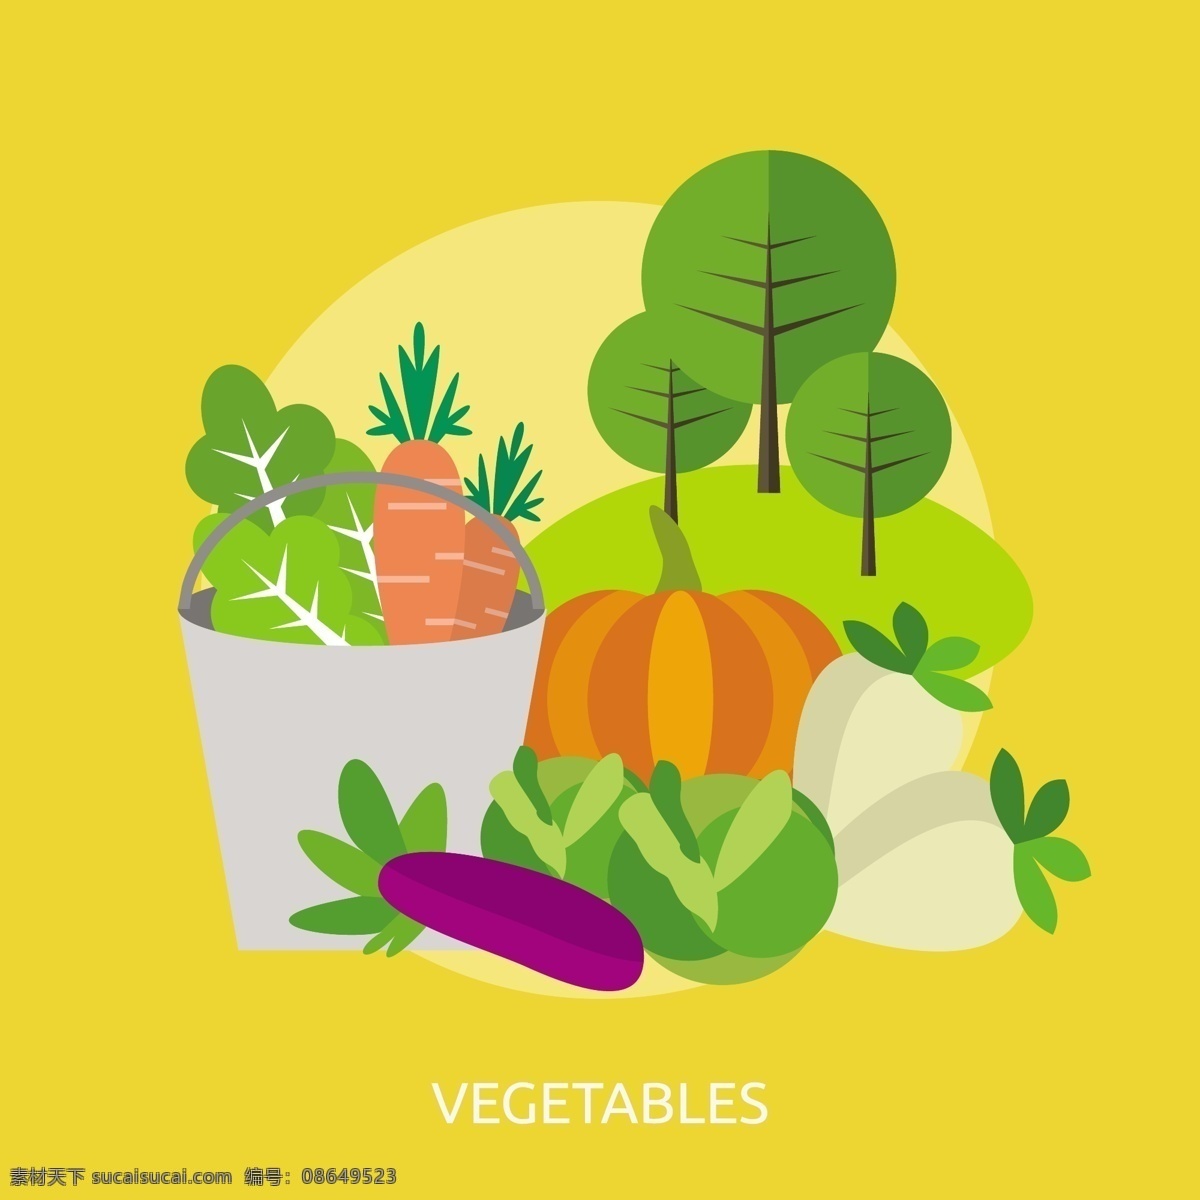 蔬菜背景设计 背景 食物 健康 墙纸 颜色 蔬菜 平坦 丰富多彩 平面设计 南瓜 健康食品 胡萝卜 背景色 彩色